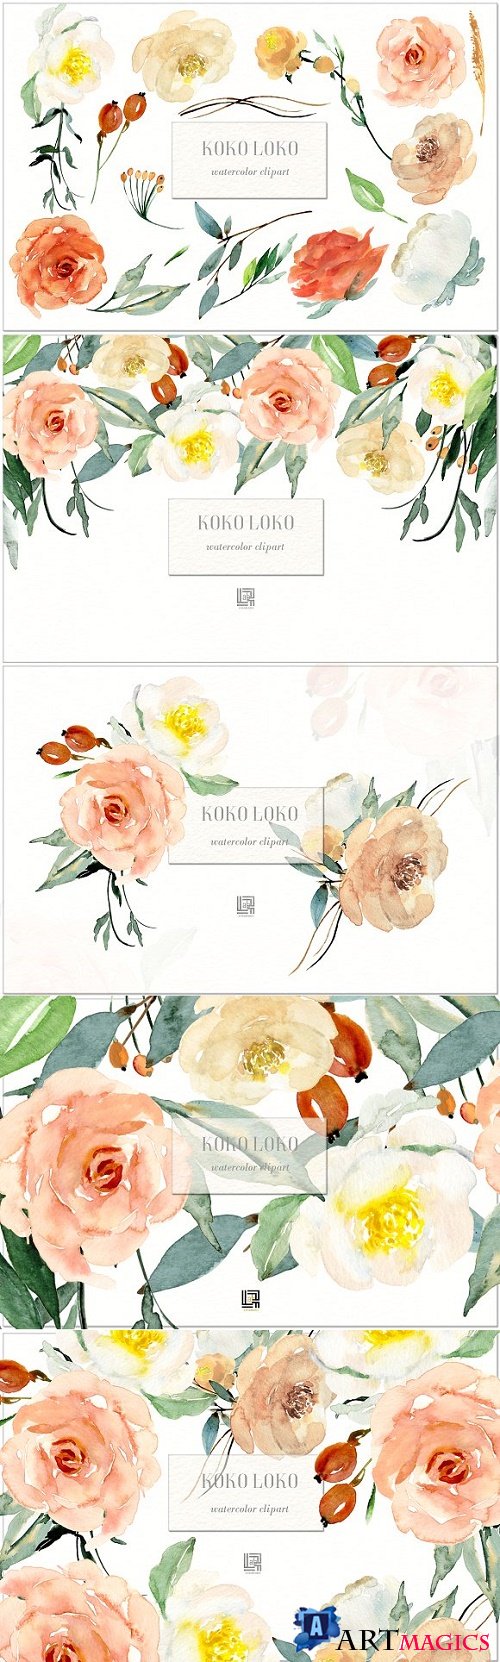 Koko Loko. Watercolor floral clipart 2435222